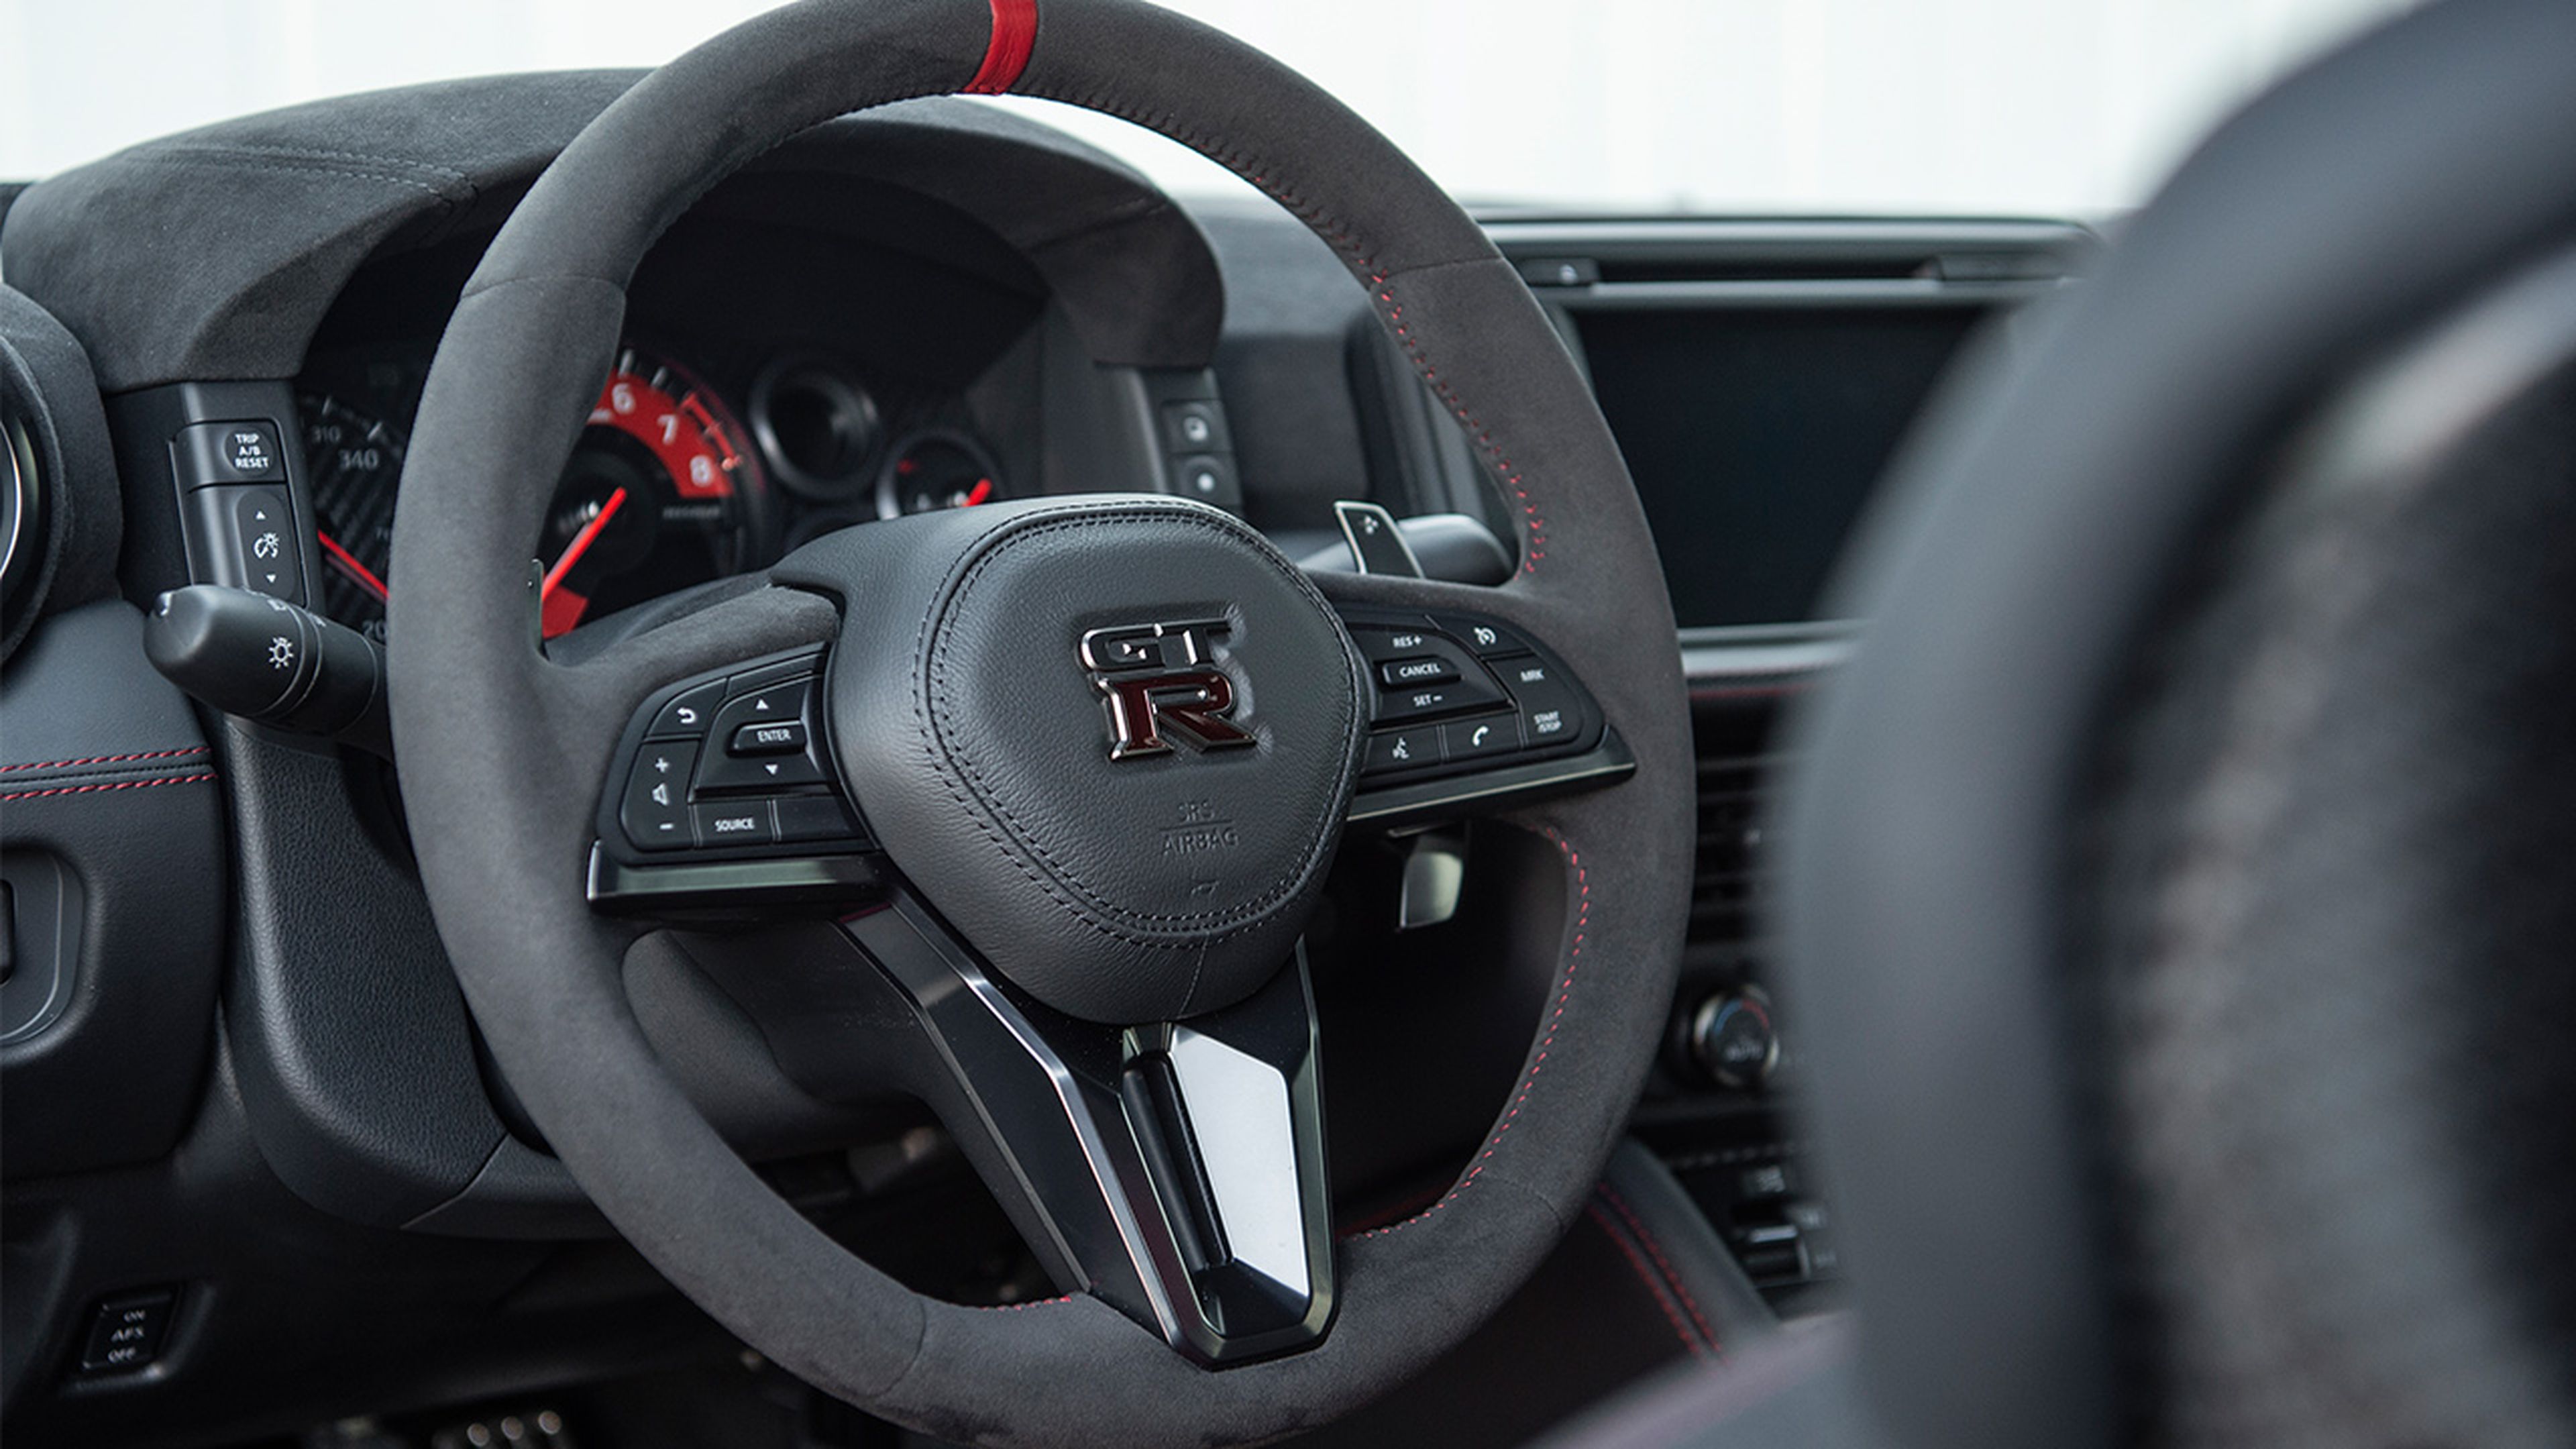 Nissan GT-R Nismo 2020 interior